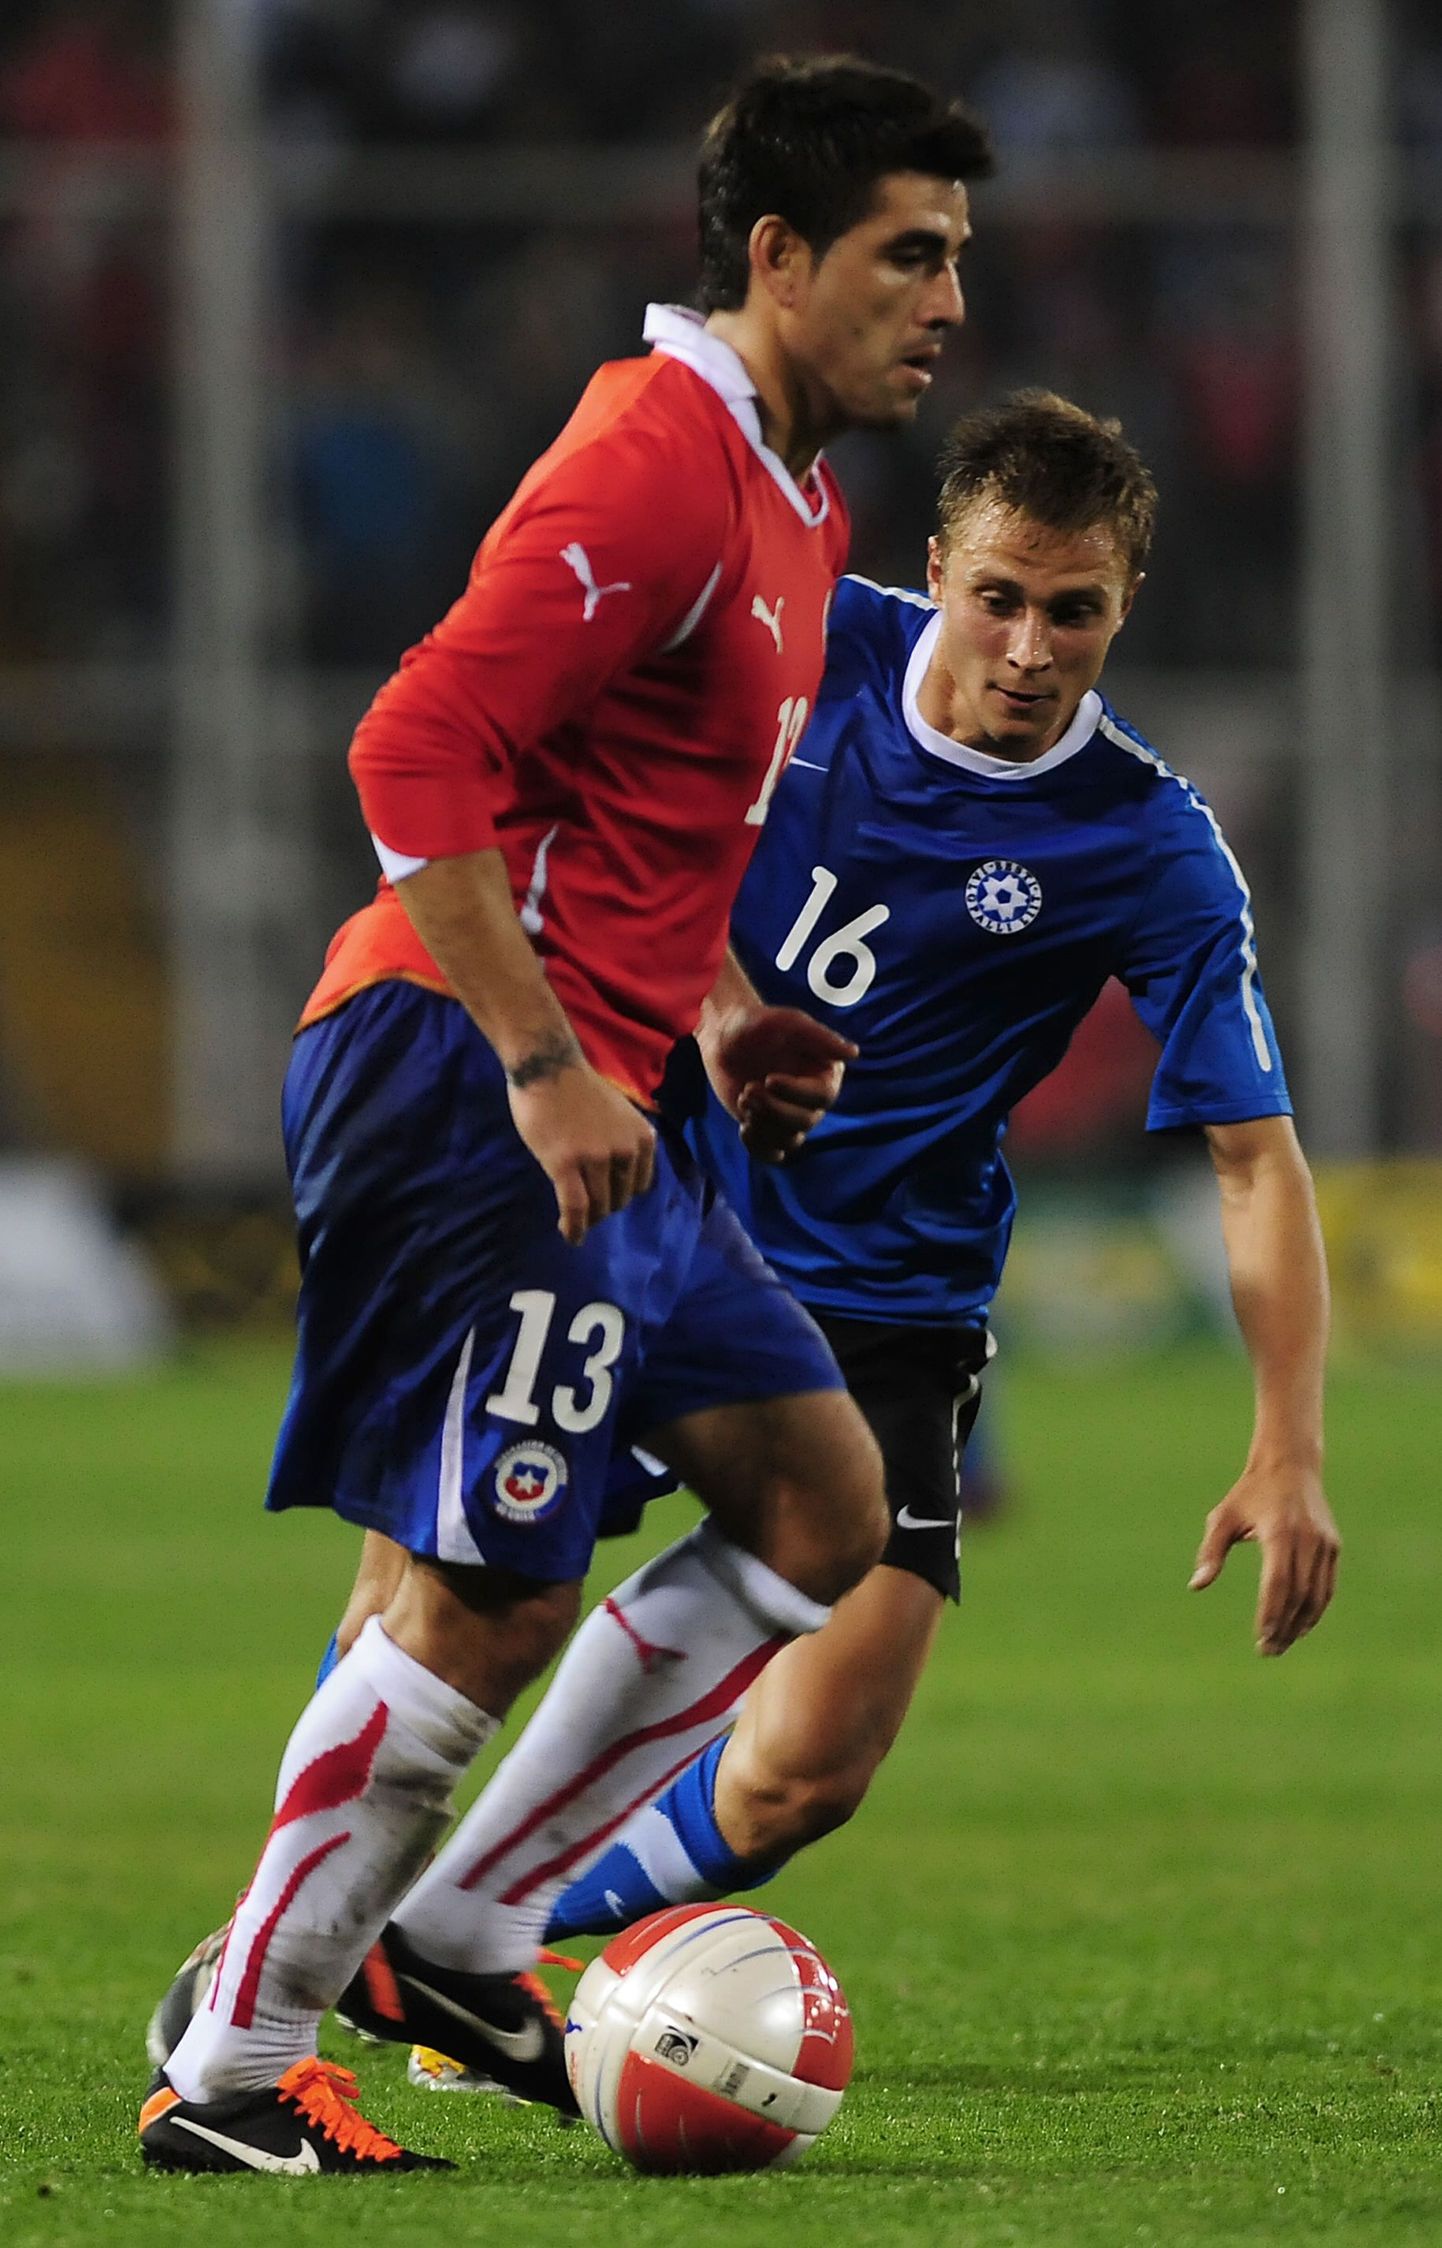 Герд Камс (справа) в матче за сборную Эстонии.